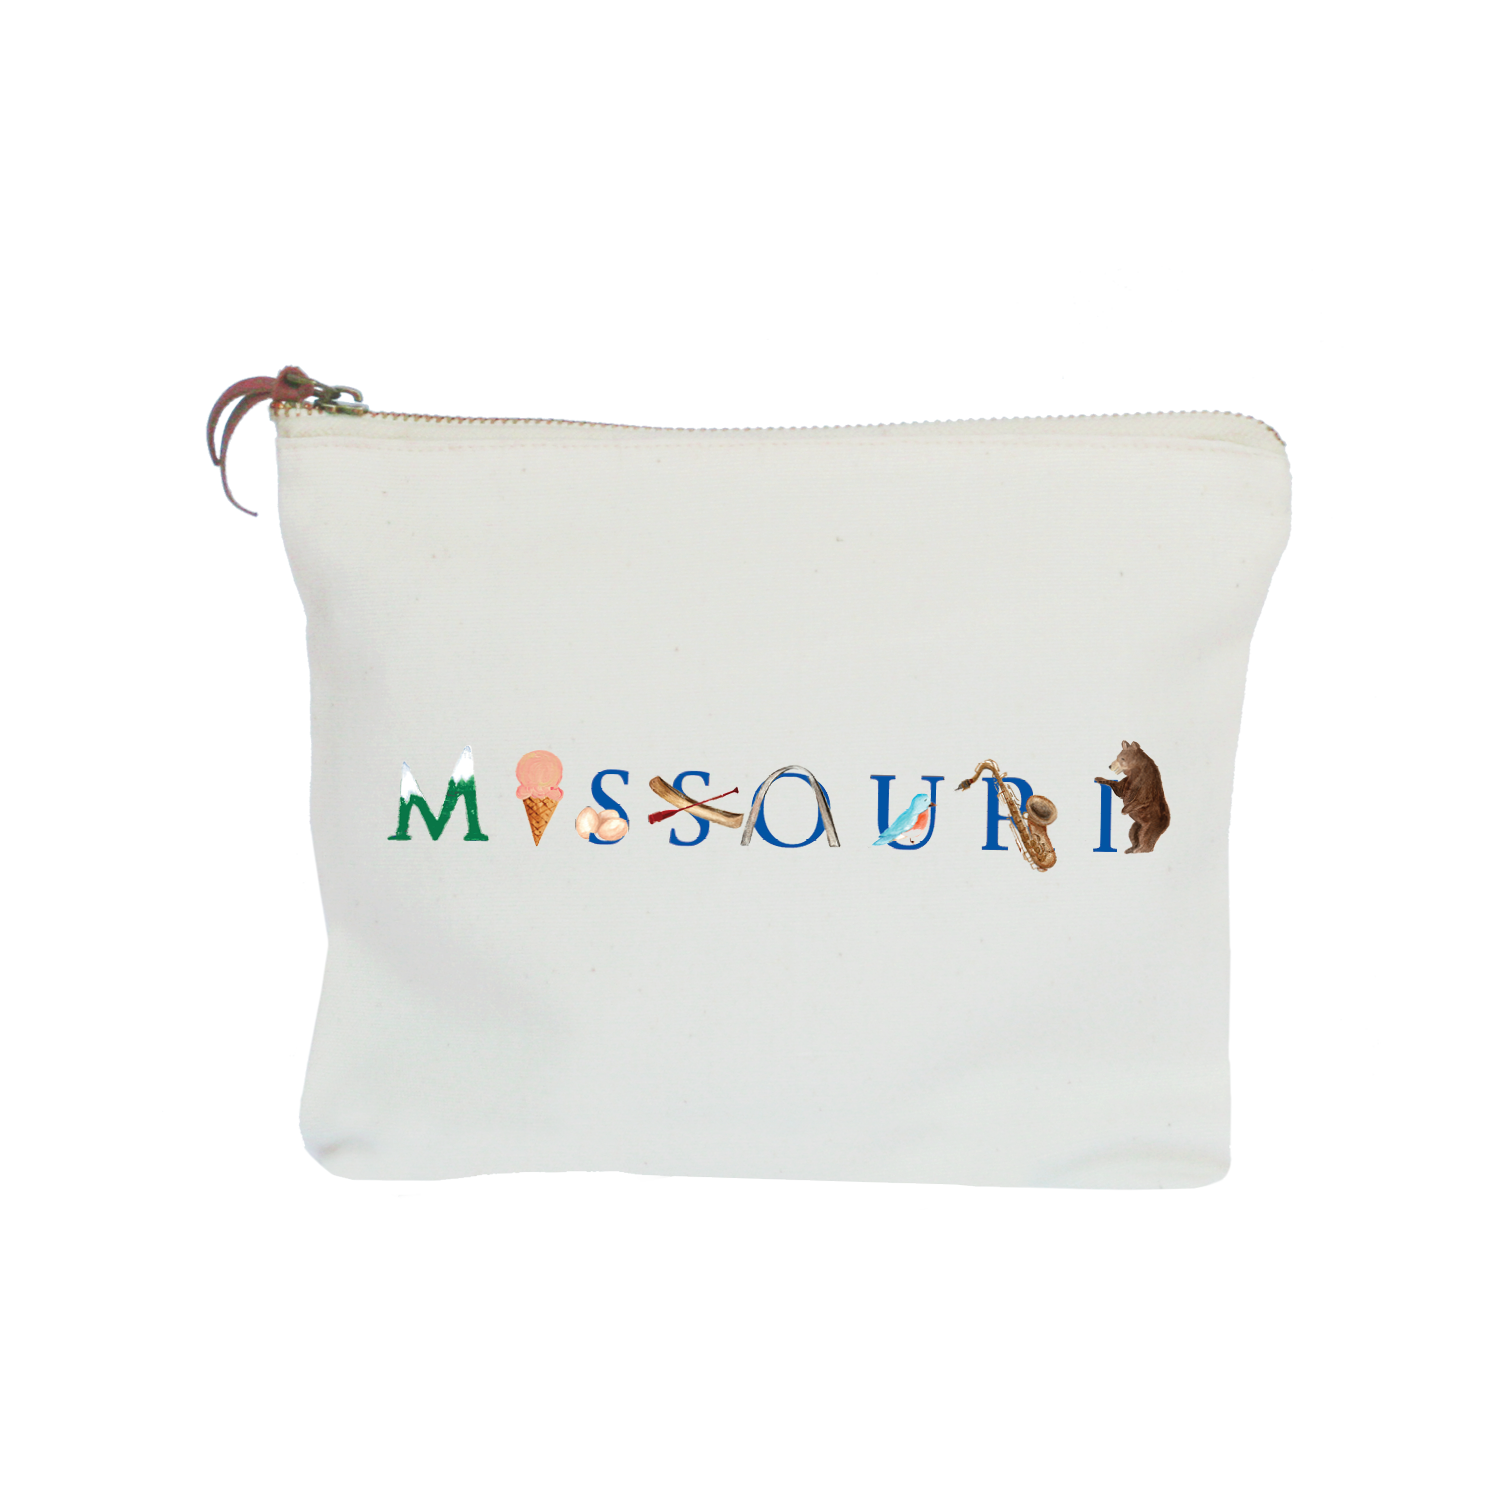 Missouri zipper pouch